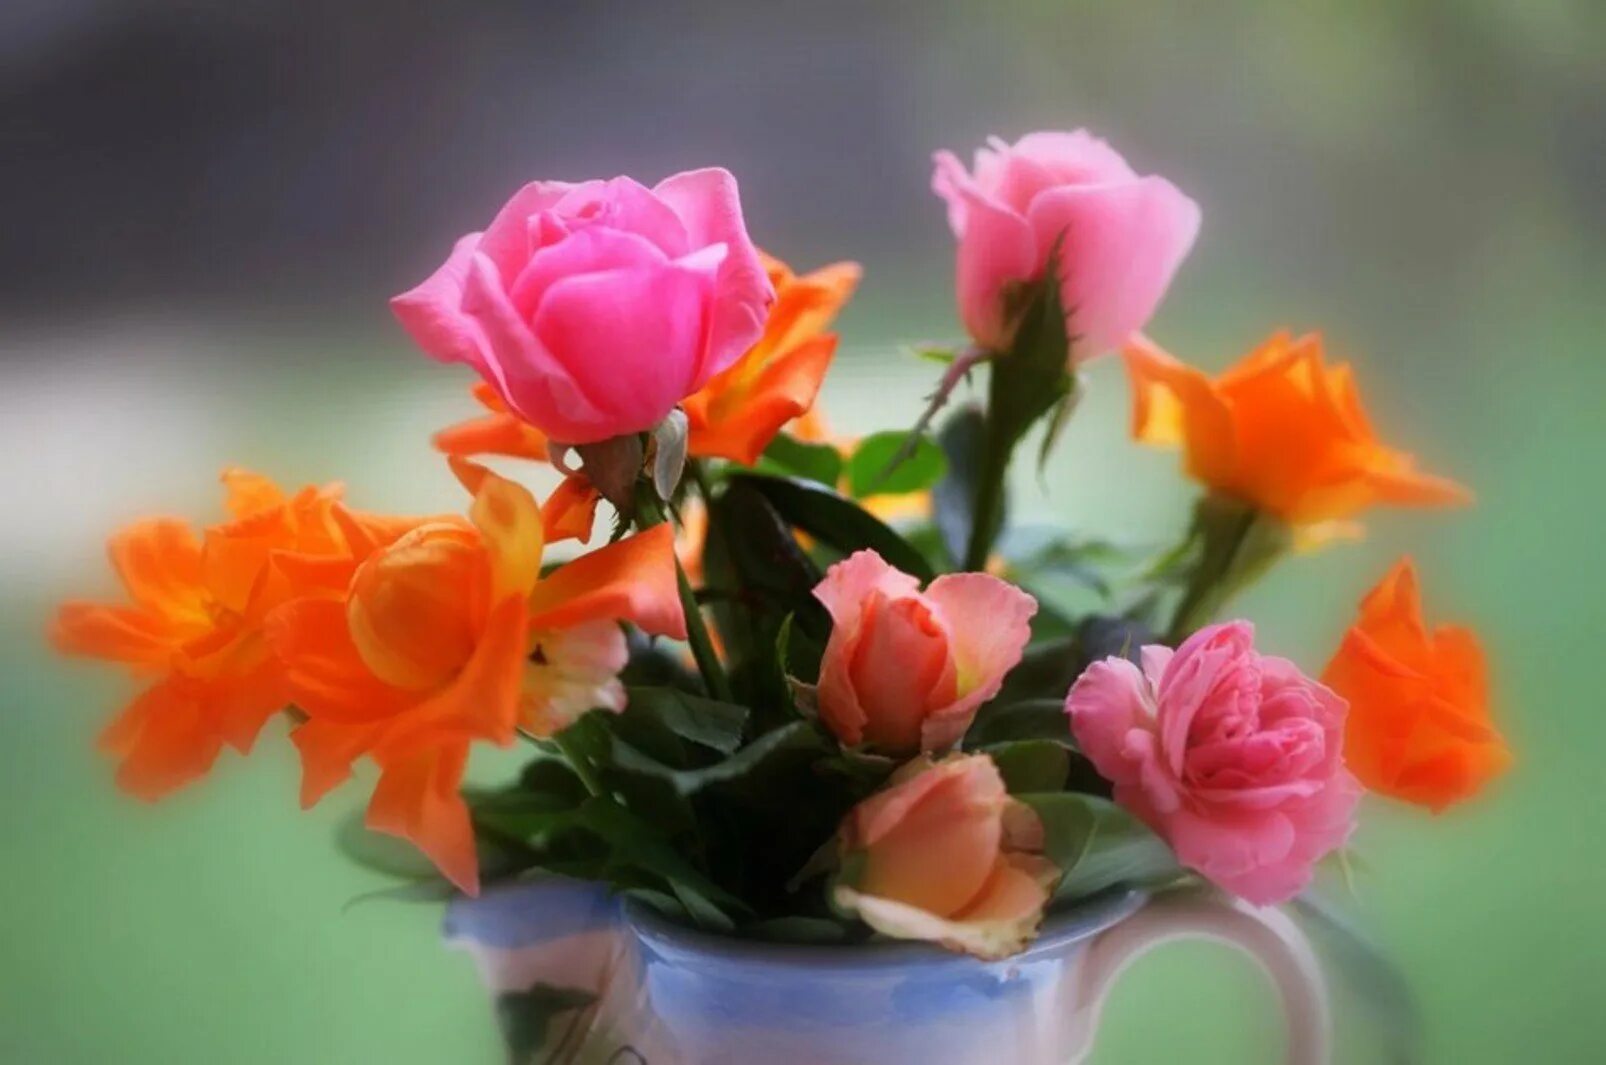 Хорошего дня мудрости. Красивые цветы. Очень красивые цветы. Хорошего настроения и удачного дня цветы. Чудесные цветы.